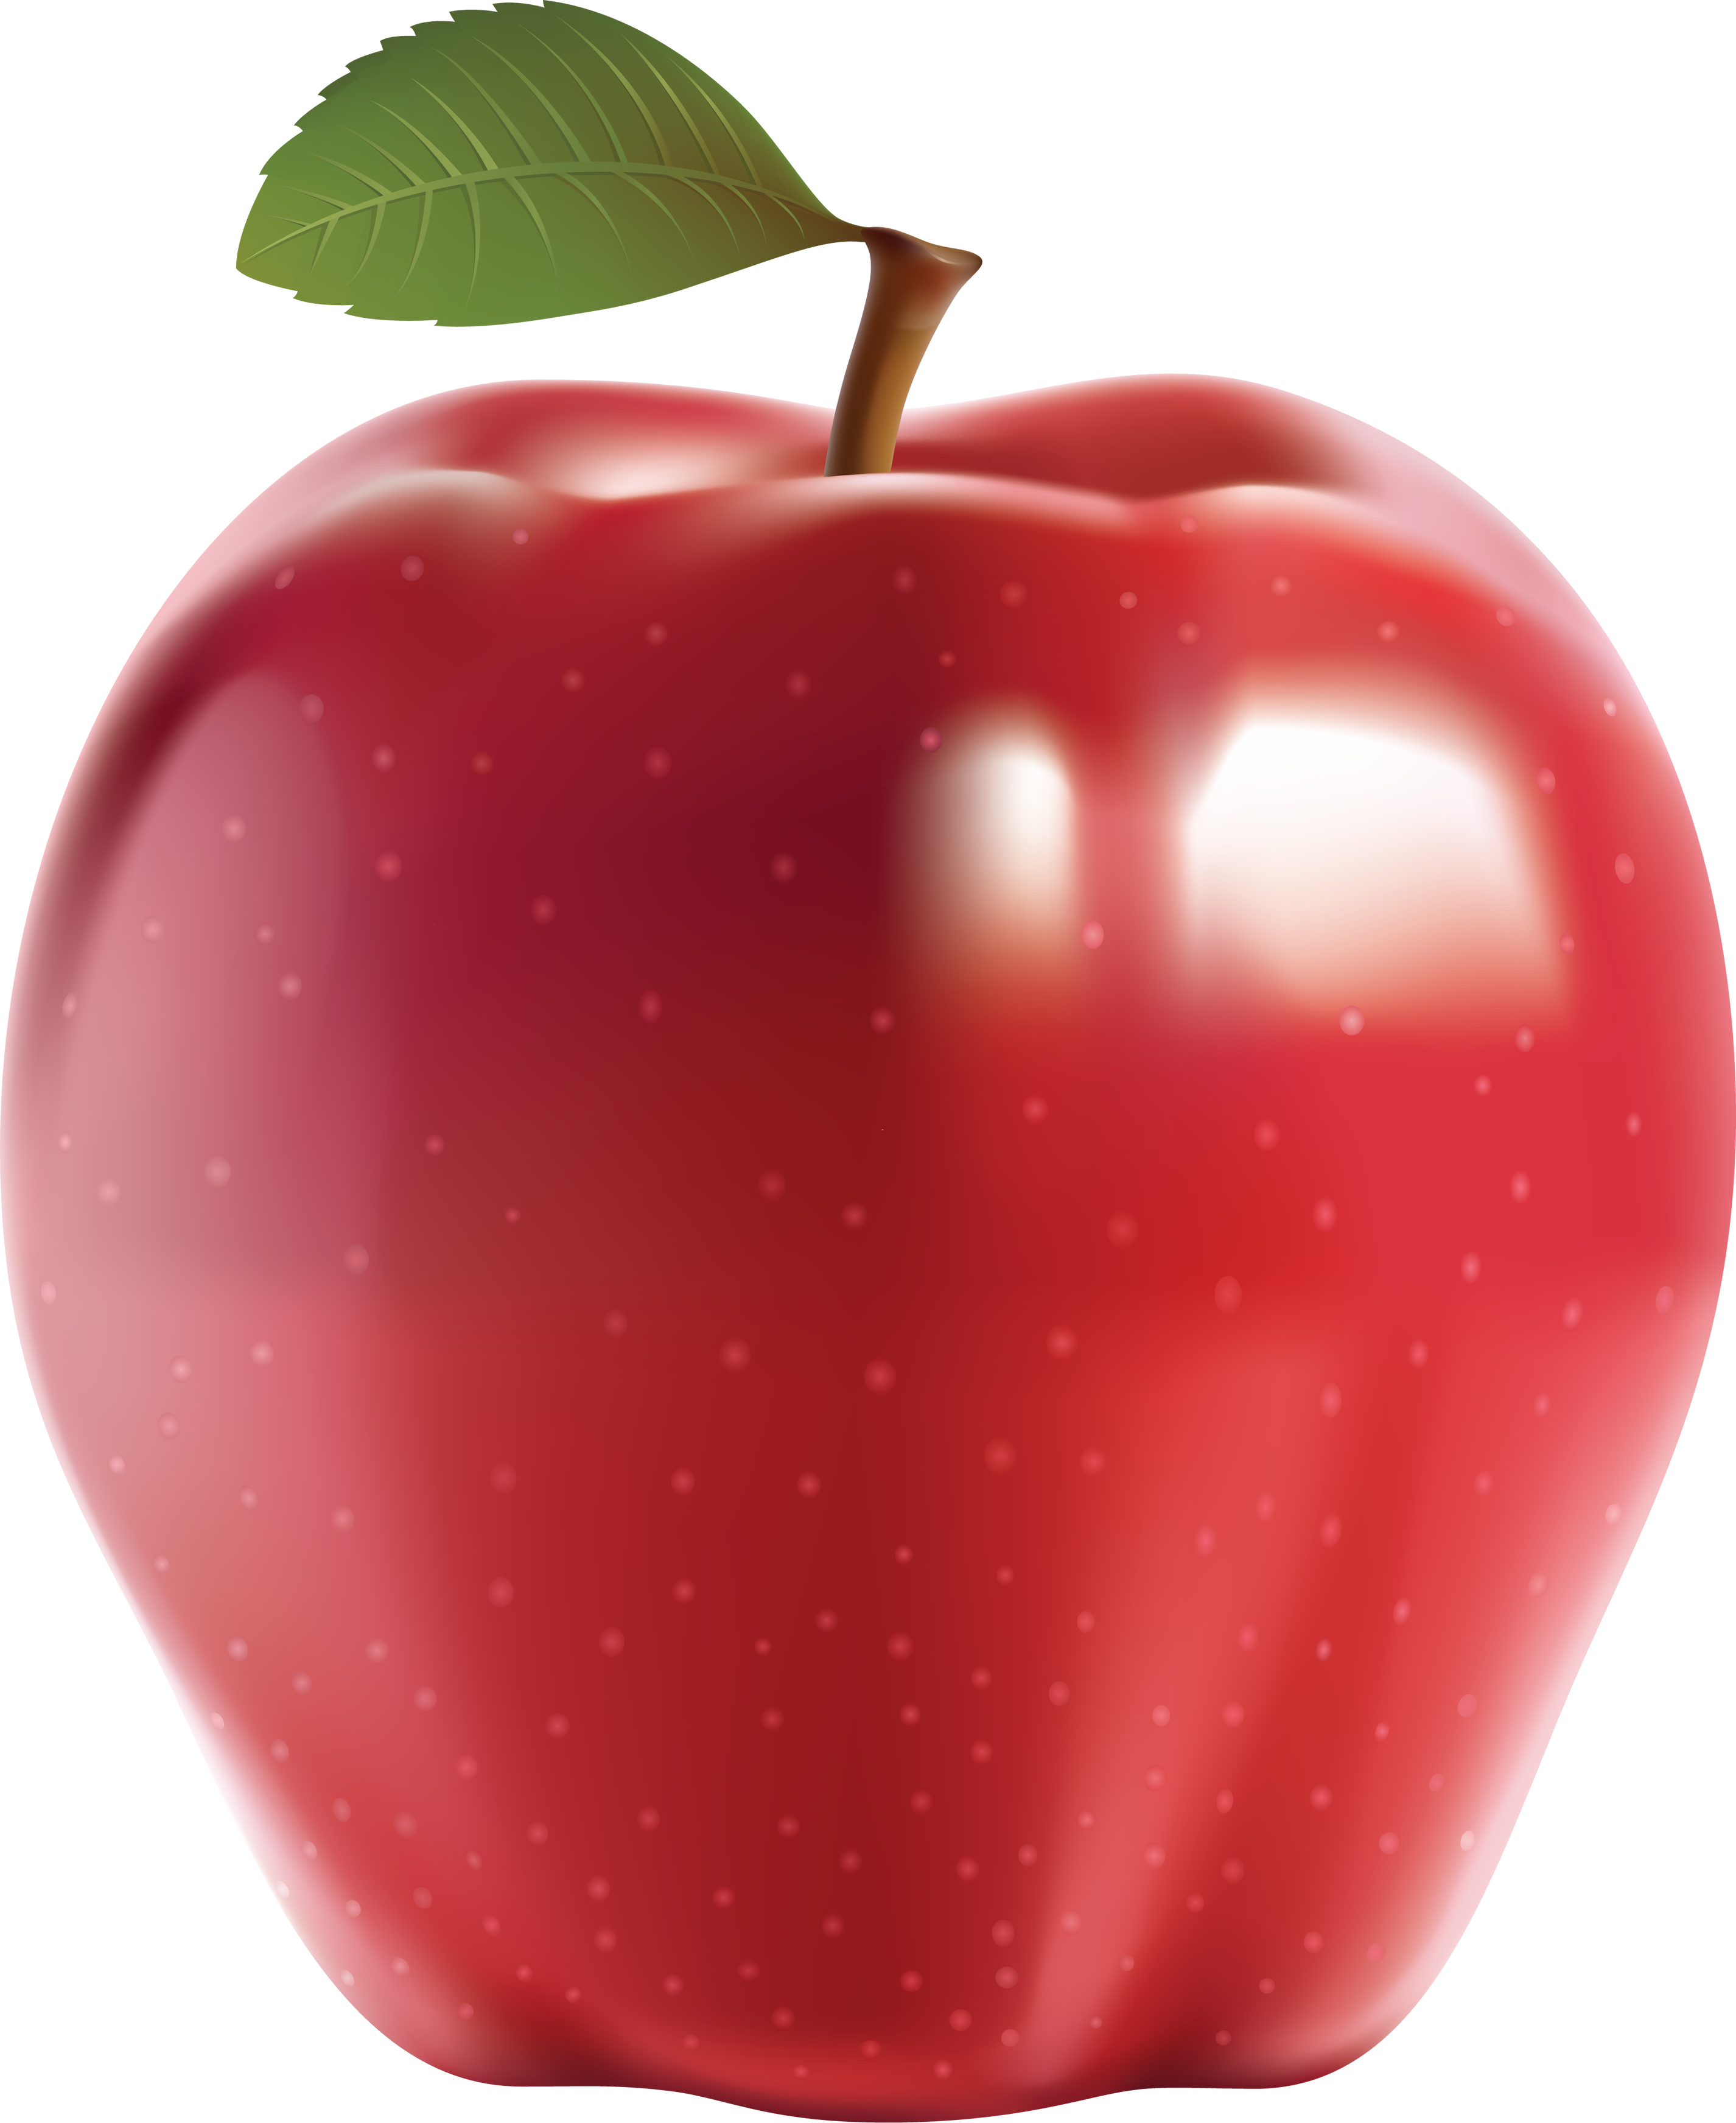 Красный яблочный фрукт PNG изображения фон